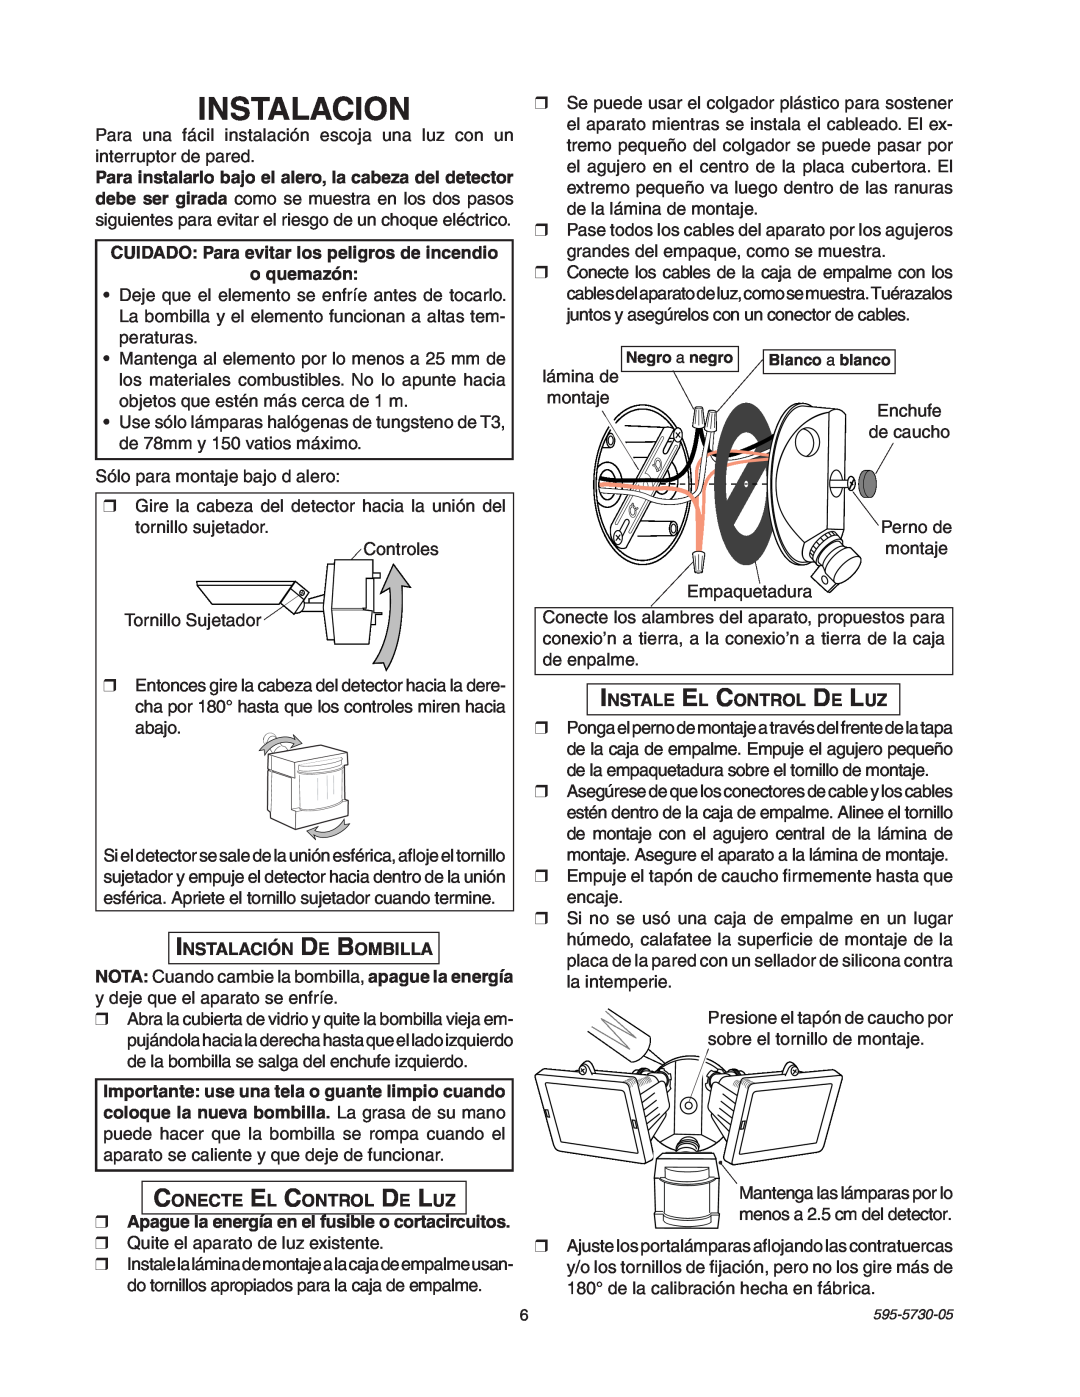 Heath Zenith SL-5514 manual Instalacion, CUIDADO Para evitar los peligros de incendio, oquemazón, Instalación De Bombilla 